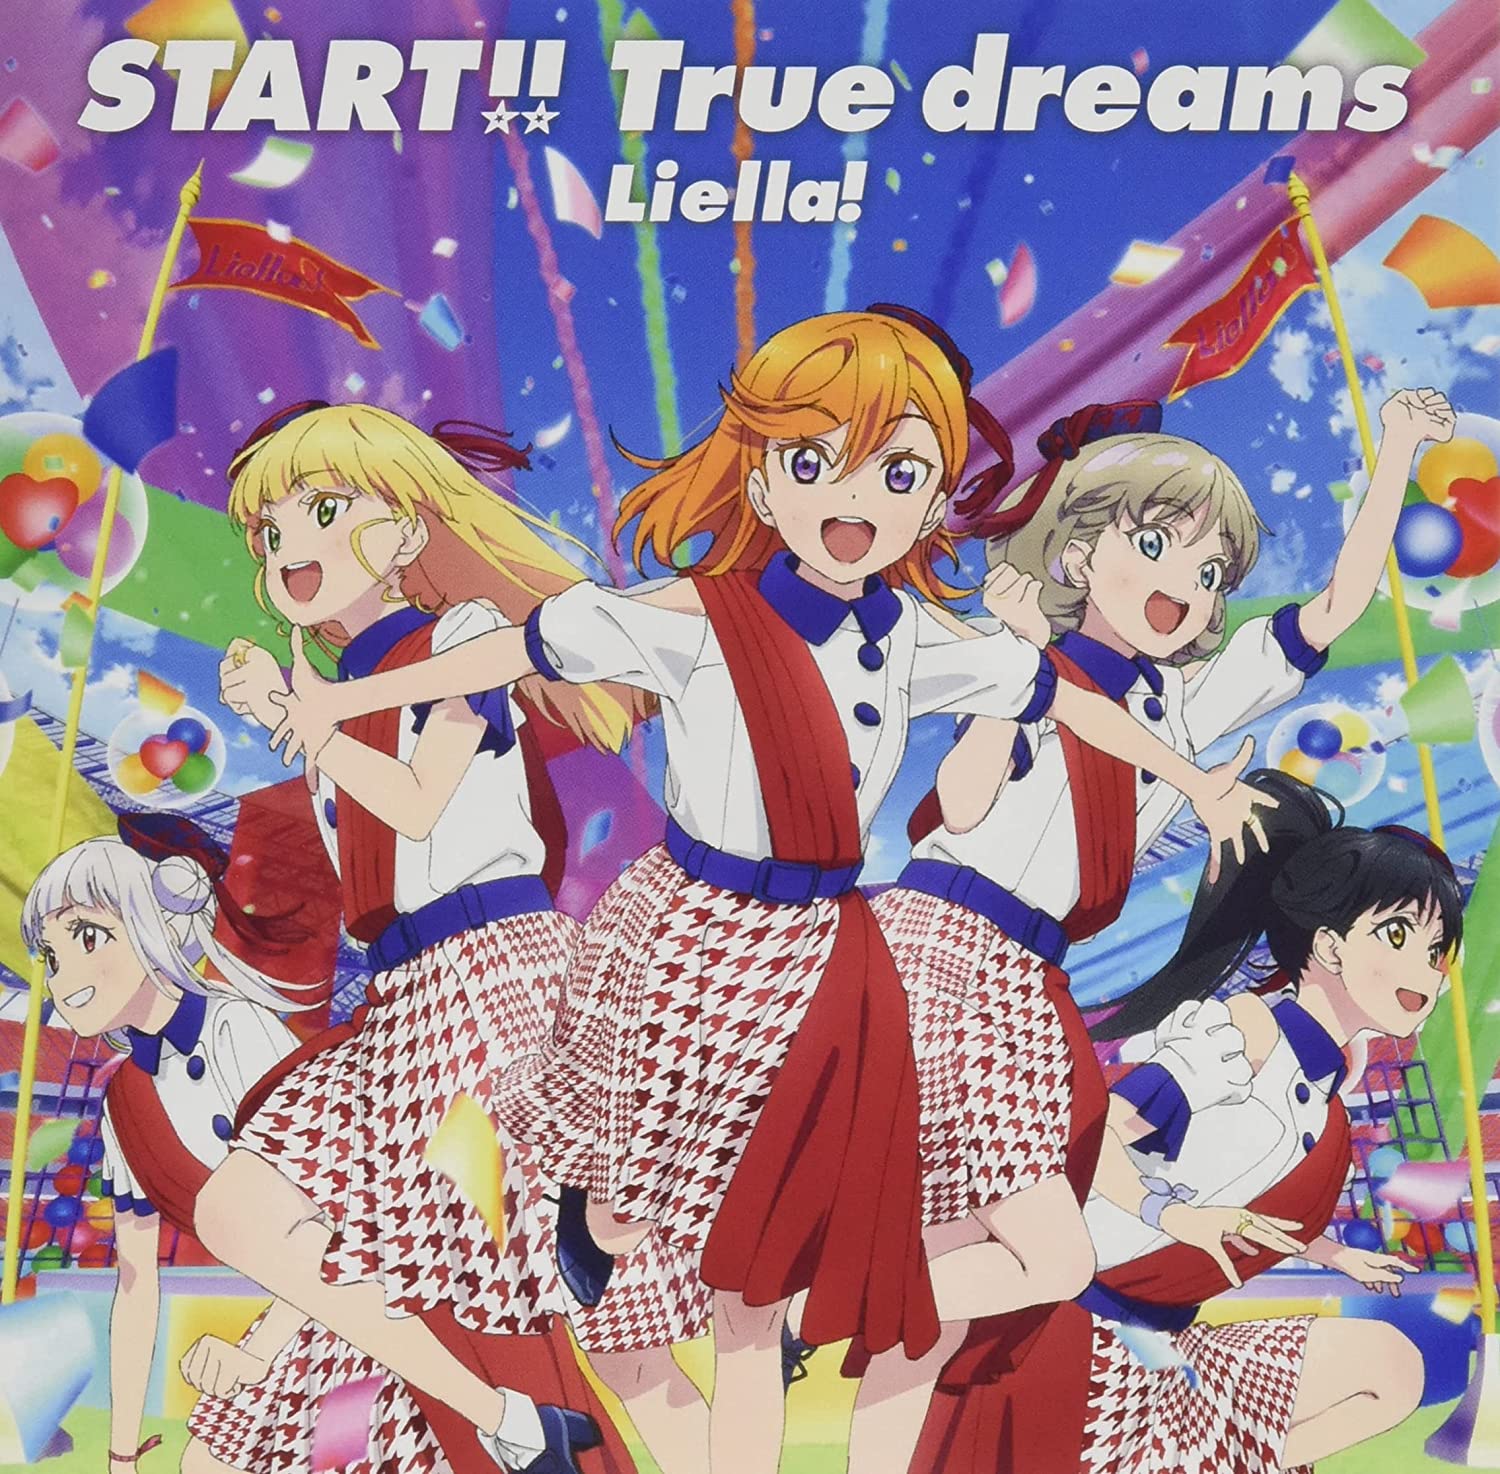 TVアニメ『ラブライブ! ス-パ-スタ-!!』OP主題歌「START!! True dreams」